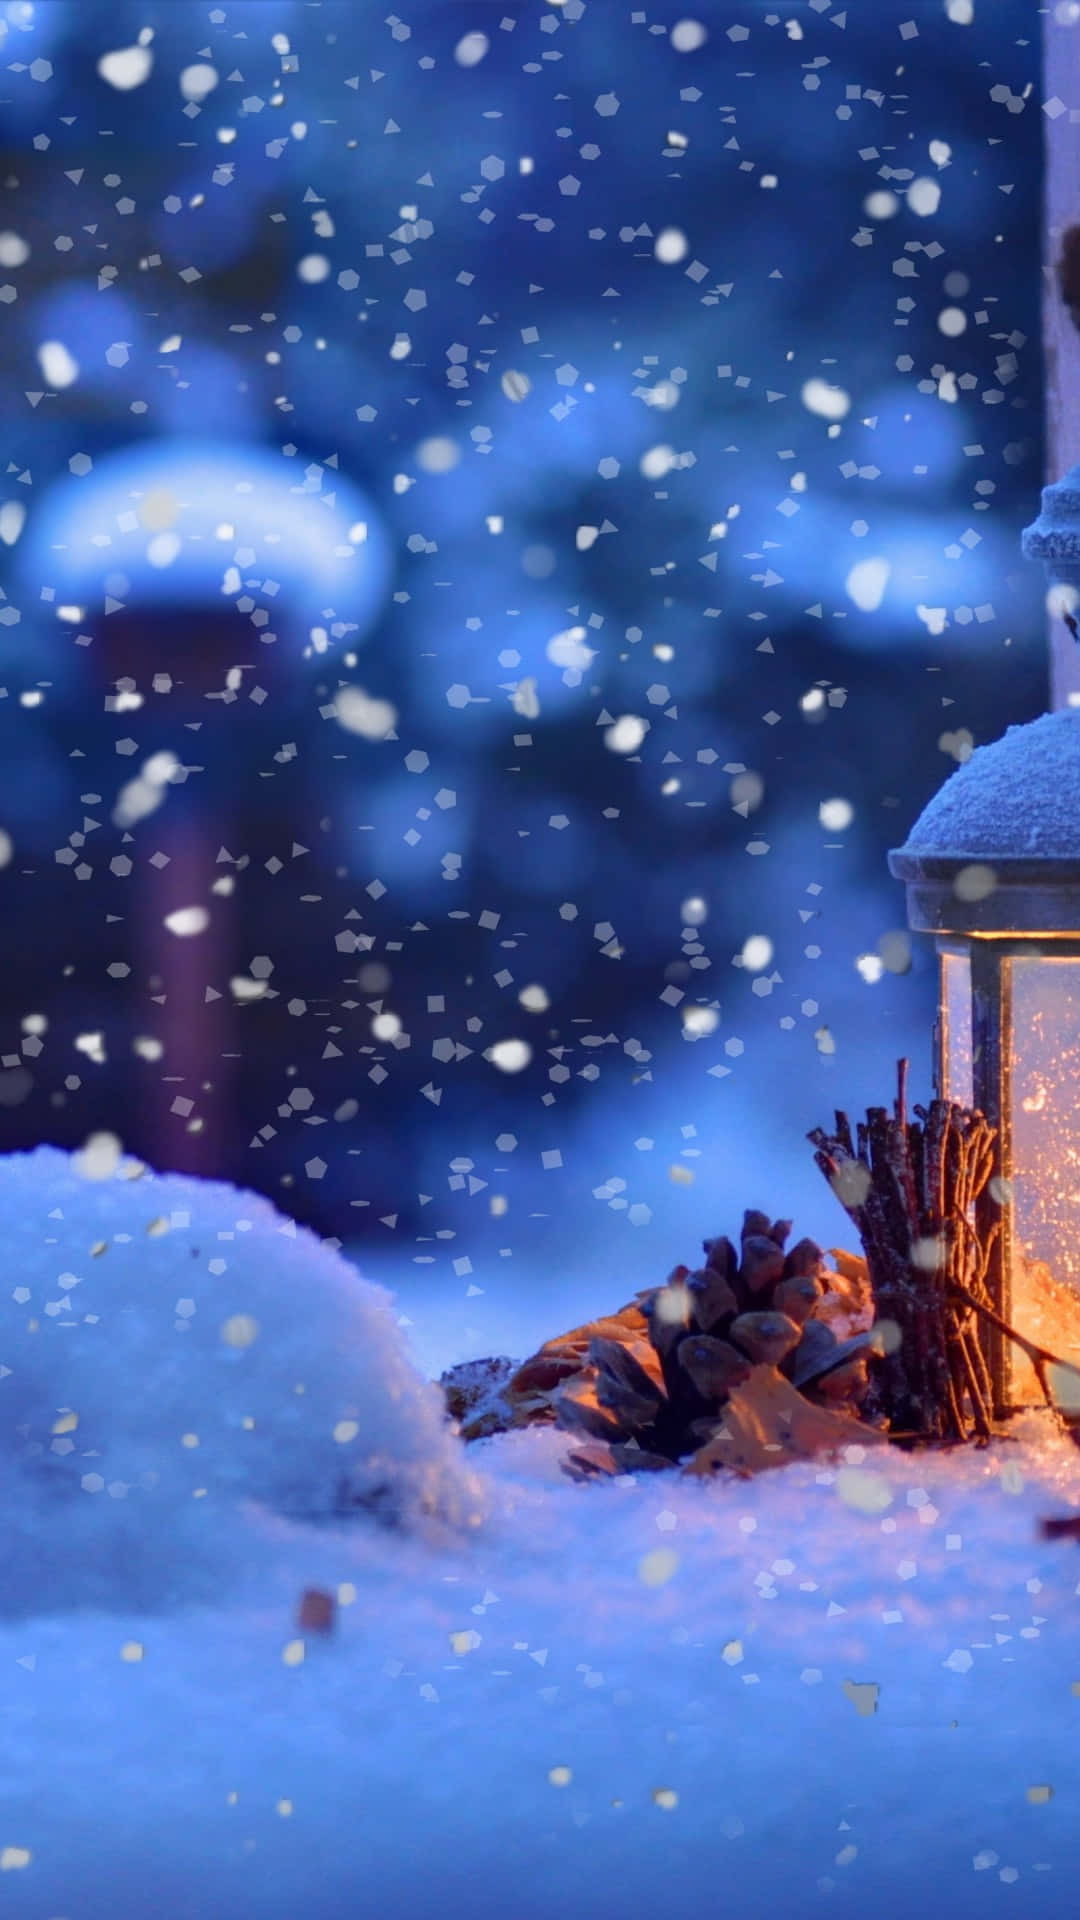 Feiernsie Die Jahreszeit Mit Einer Winterwunderlandschaft Aus Weihnachtsschnee Wallpaper